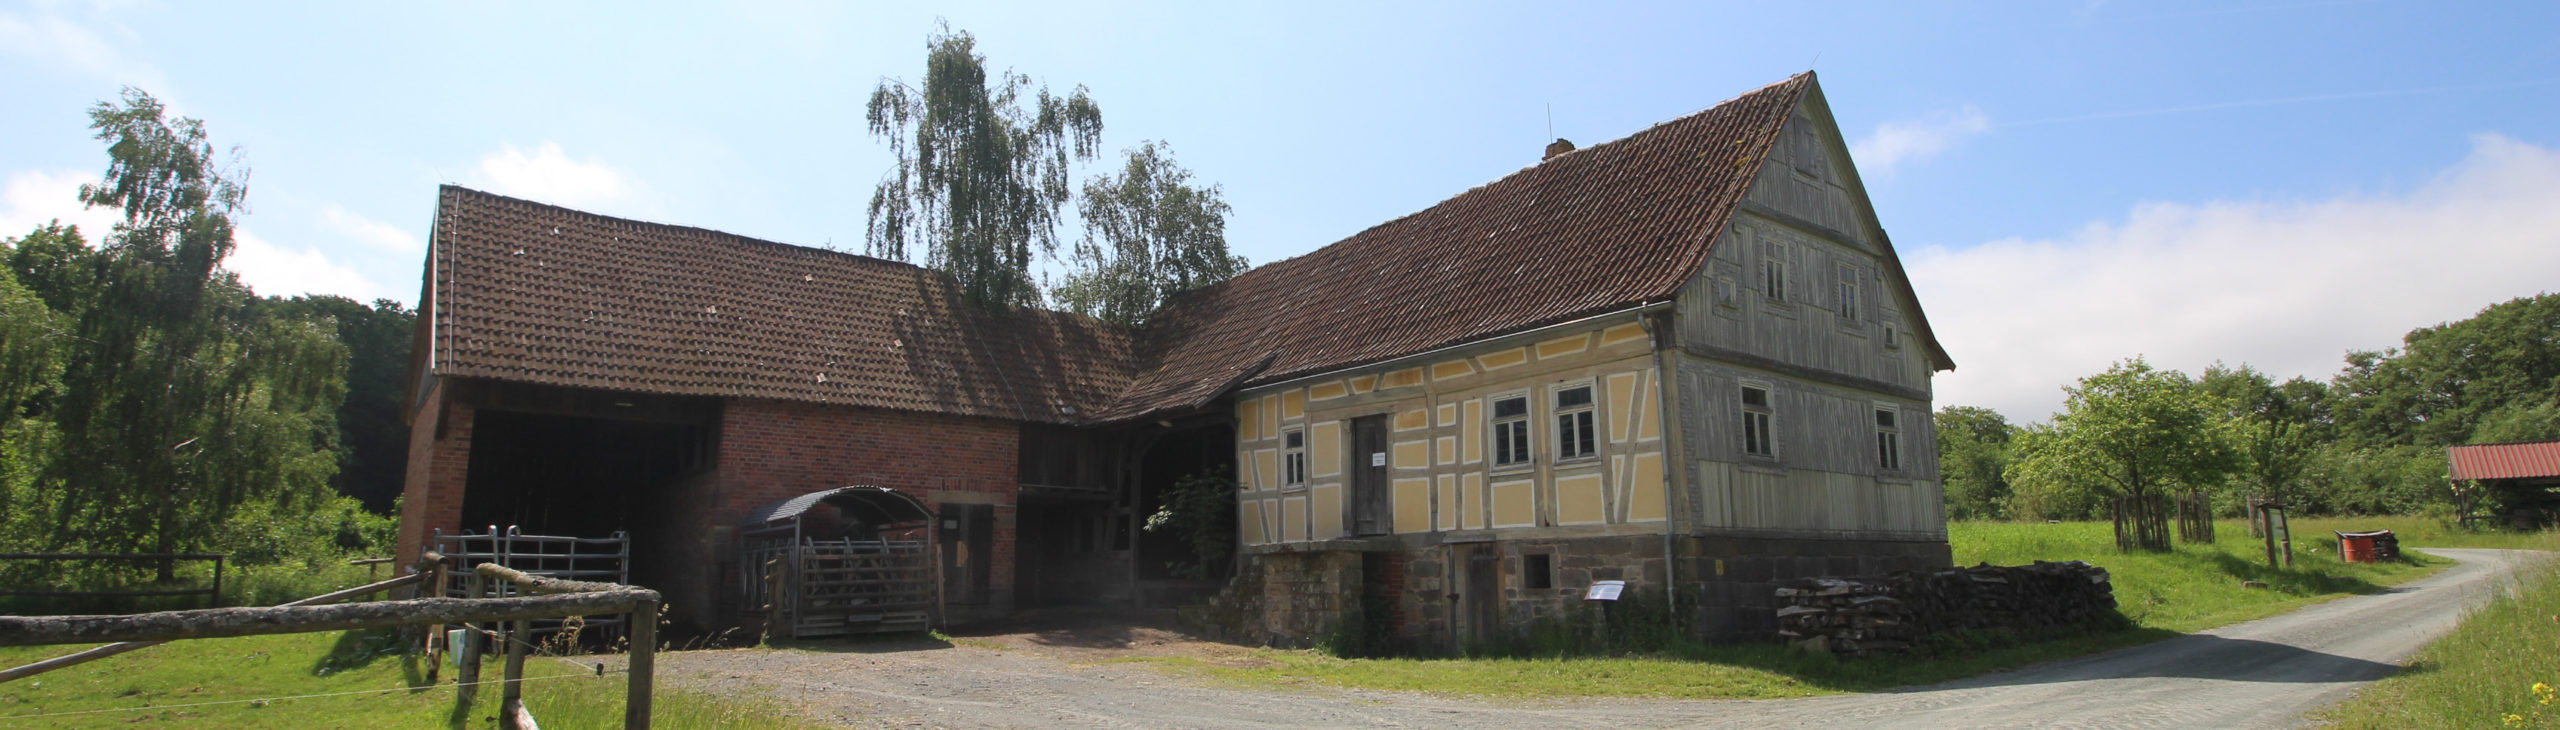 Historische Hofanlage aus Mittelkalbach